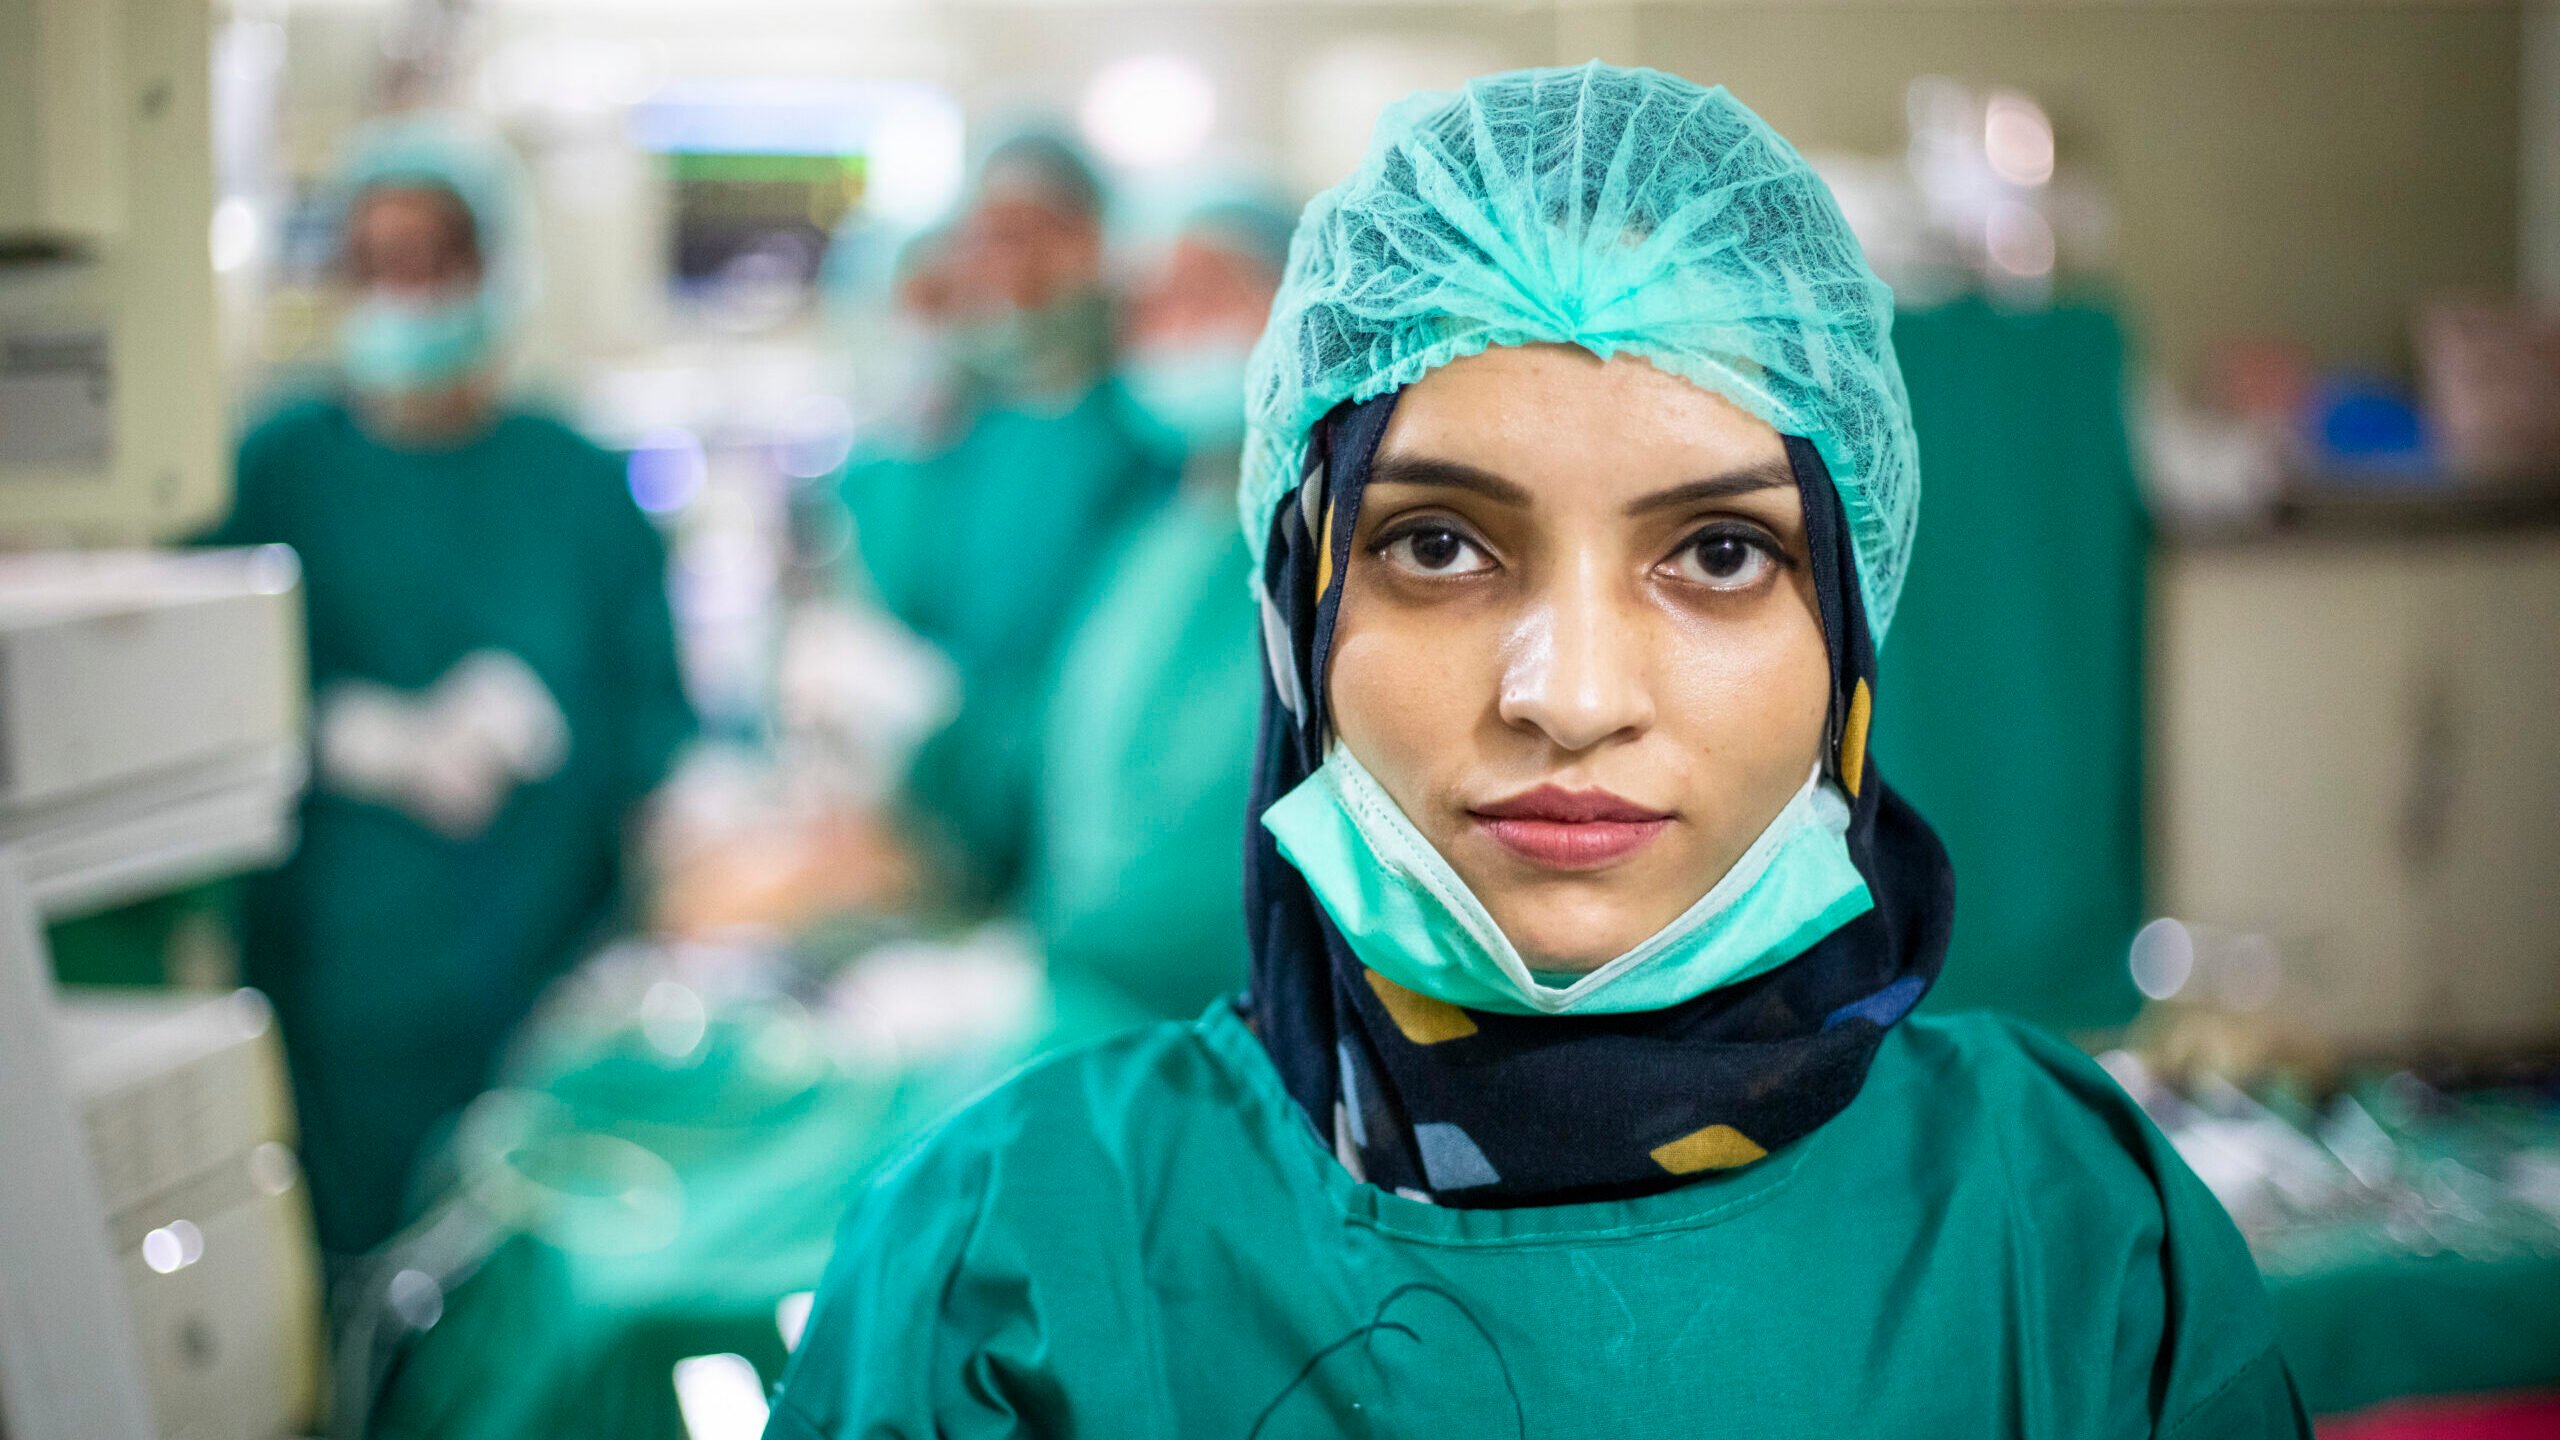 Saleema Rehman, een Afghaanse vluchtelinge, overwon vele obstakels om de eerste vrouwelijke arts in haar gemeenschap te worden. ©UNHCR/Amsal Naeem